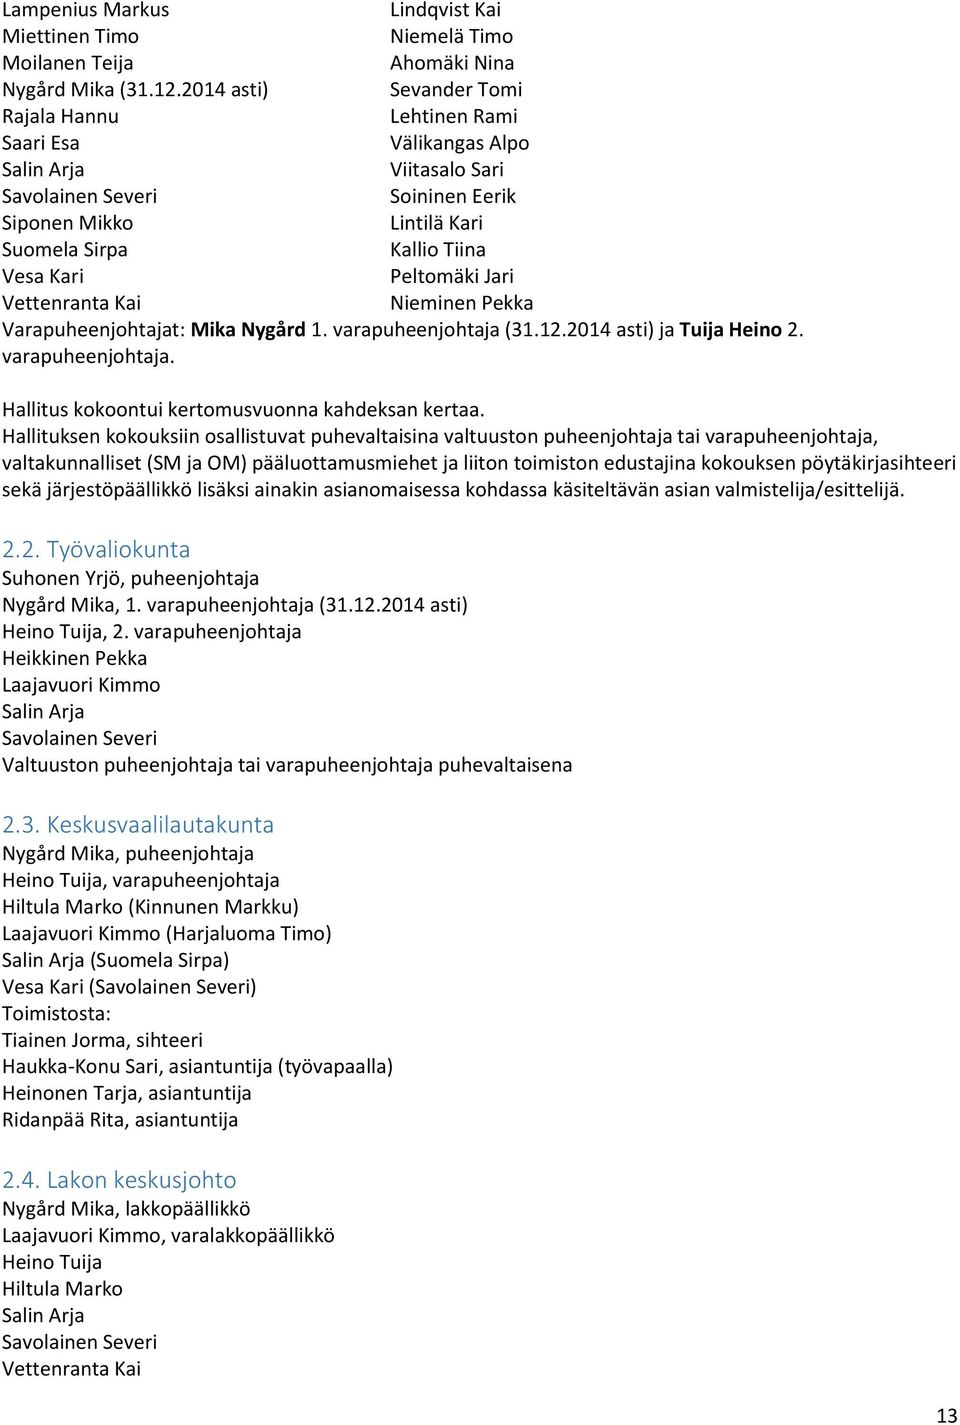 Kari Peltomäki Jari Vettenranta Kai Nieminen Pekka Varapuheenjohtajat: Mika Nygård 1. varapuheenjohtaja (31.12.2014 asti) ja Tuija Heino 2. varapuheenjohtaja. Hallitus kokoontui kertomusvuonna kahdeksan kertaa.